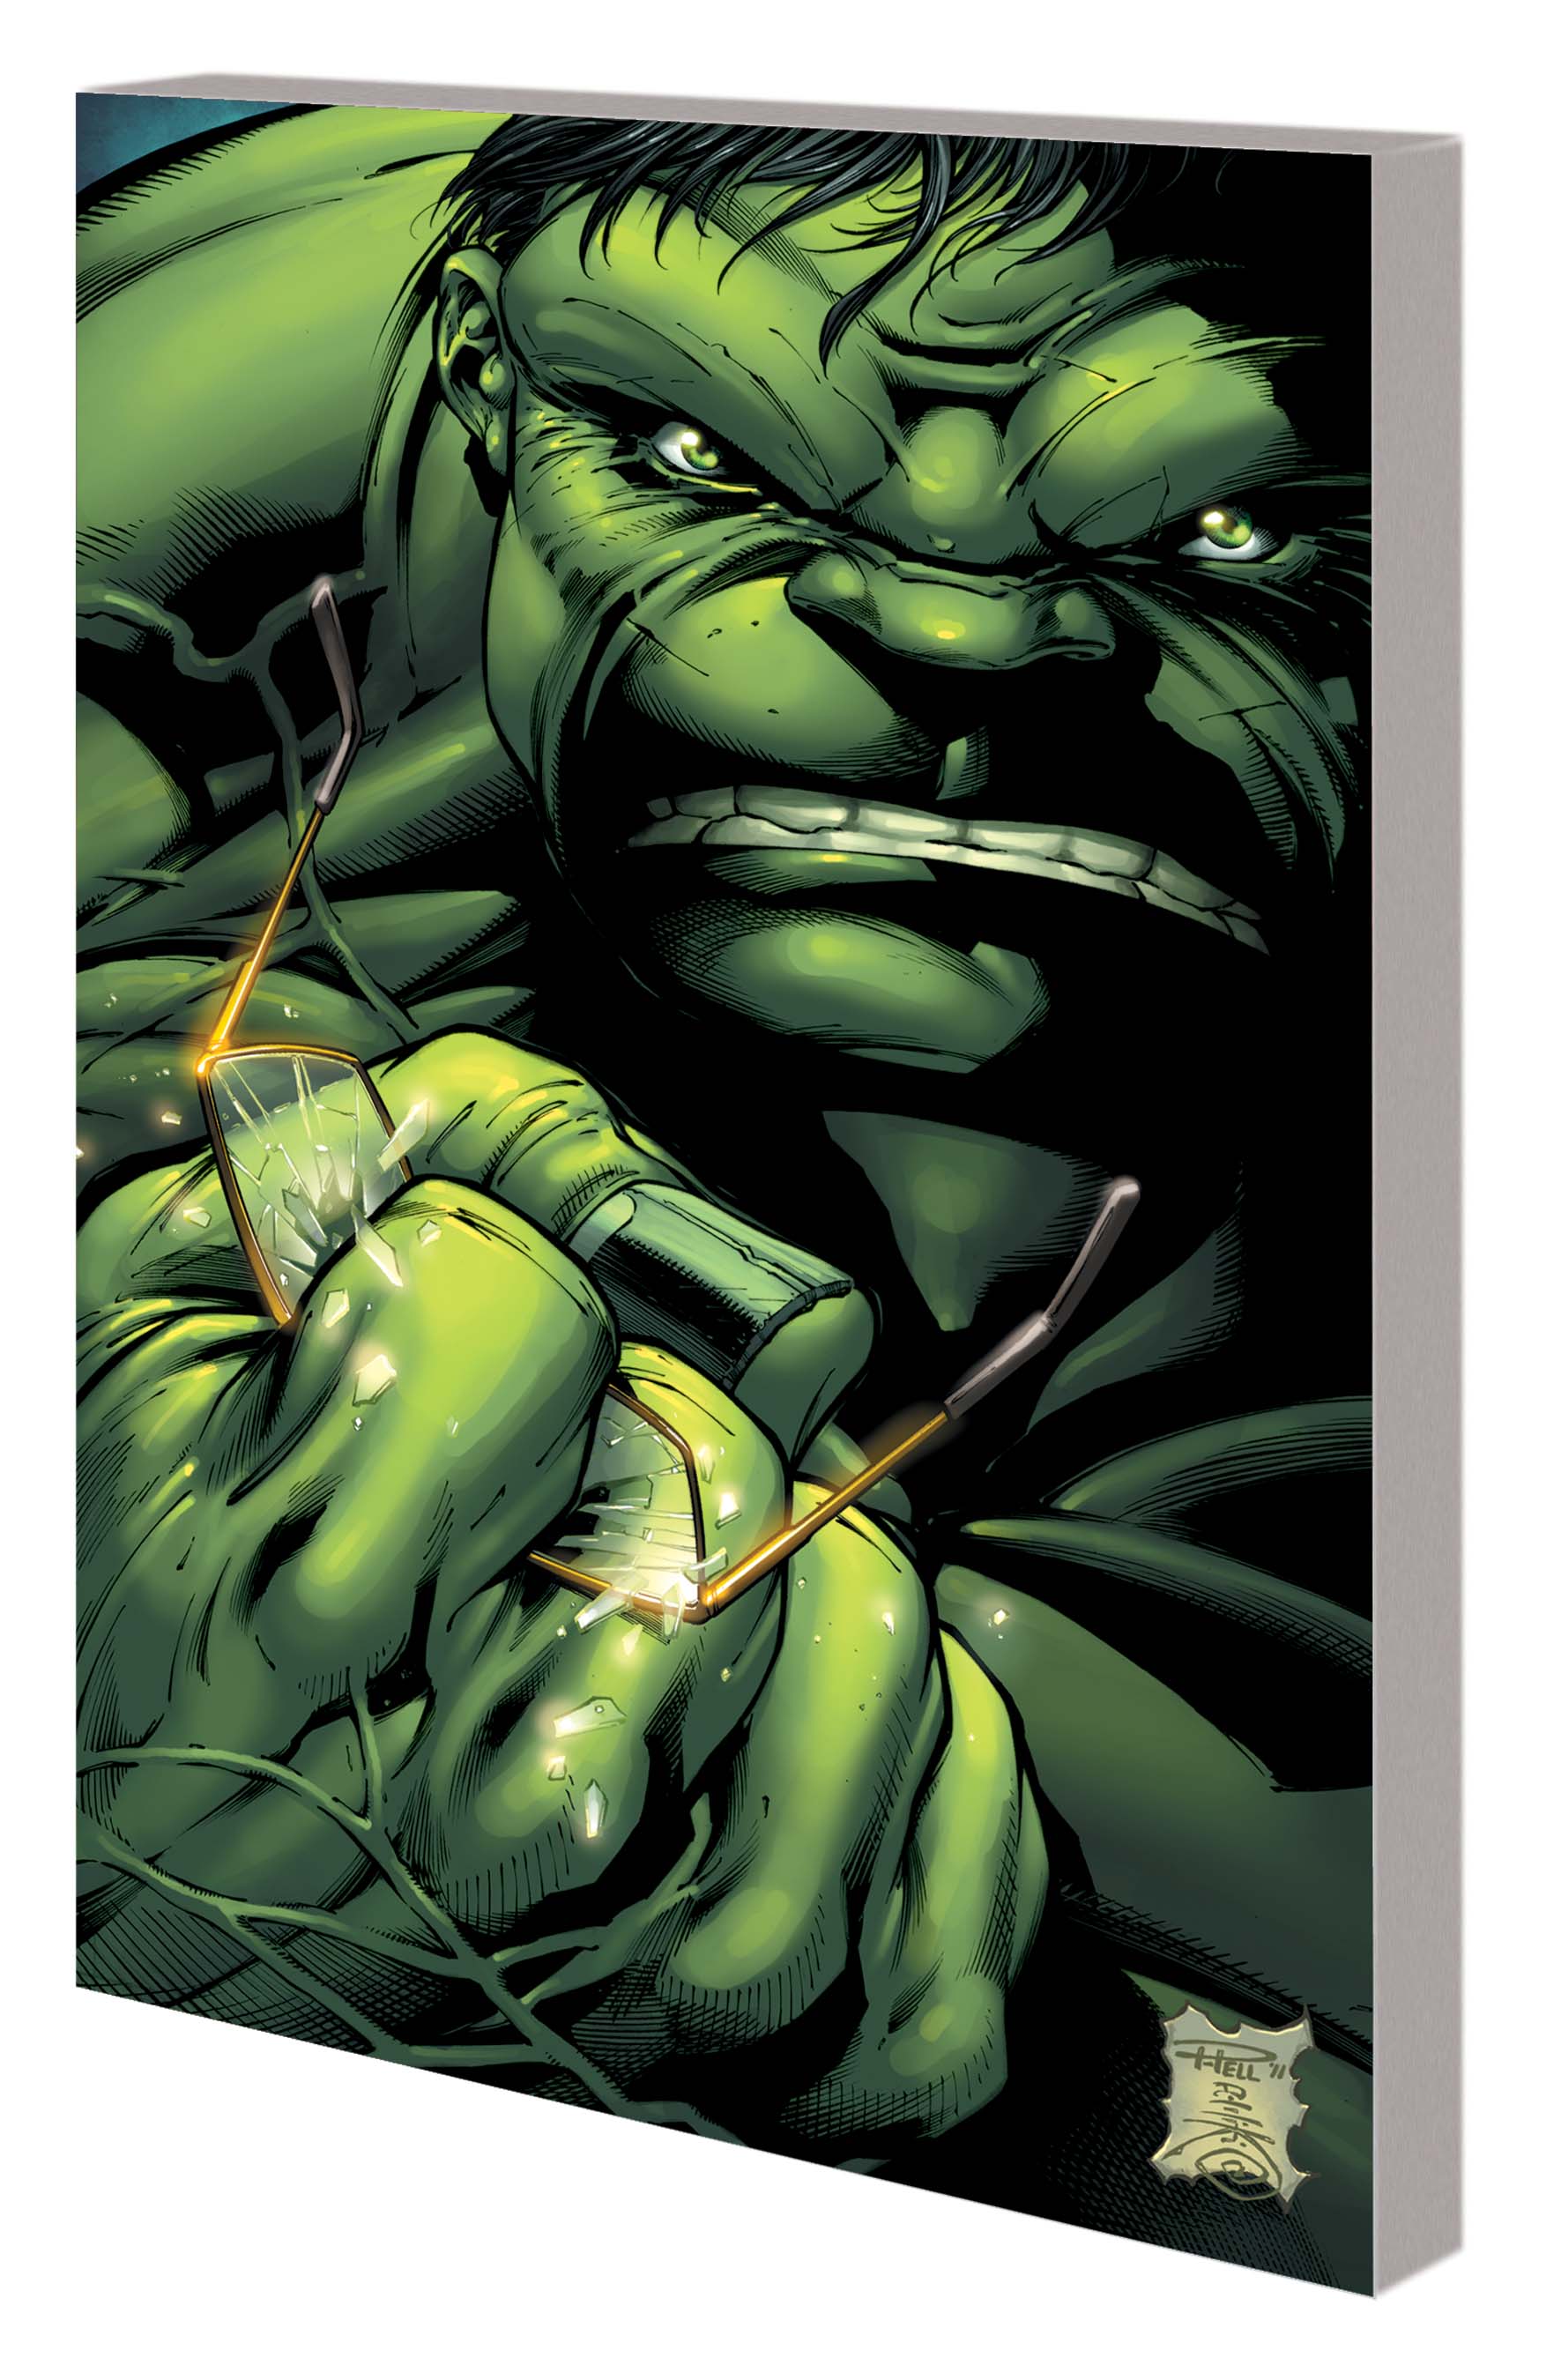 Incredible Hulks: Planet Savage (Trade Paperback)